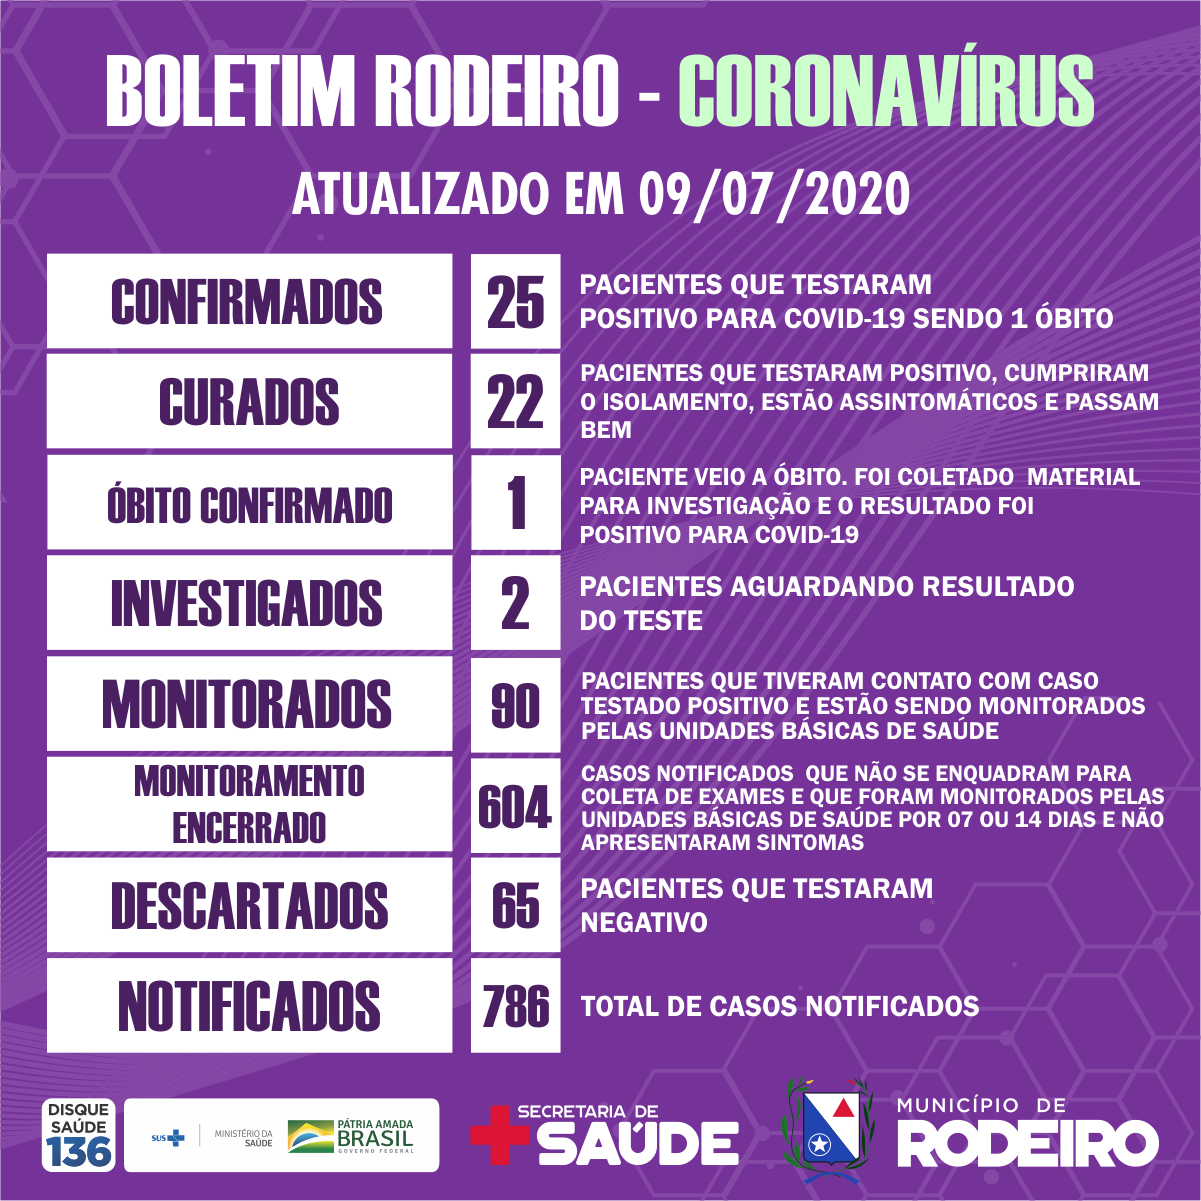 Boletim epidemiológico do Município de Rodeiro coronavírus, atualizado em 09/07/2020